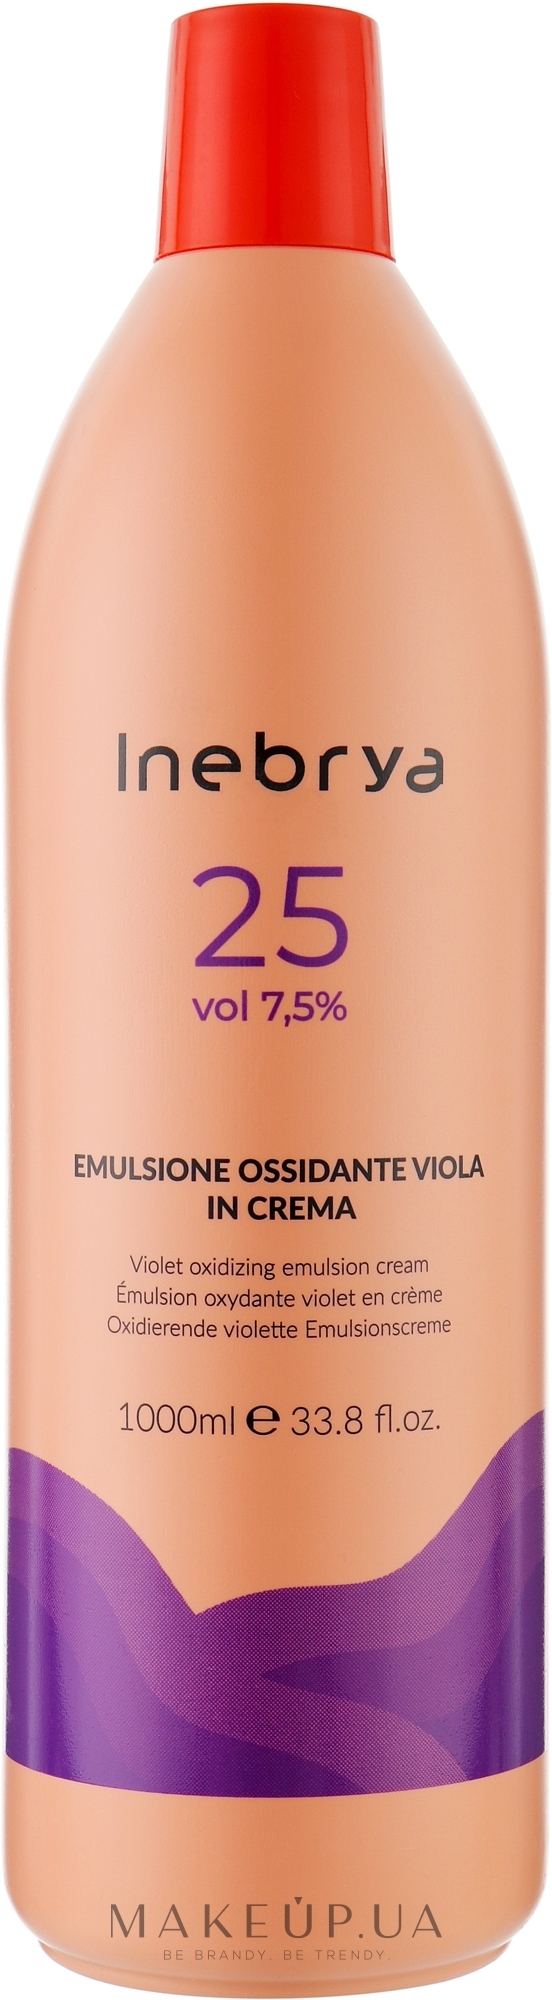 Окислительная эмульсия для волос 7,5% - Inebrya Oxidante Violet 25 Vol Inebrya Violet Oxydizing Emulsion Cream — фото 1000ml